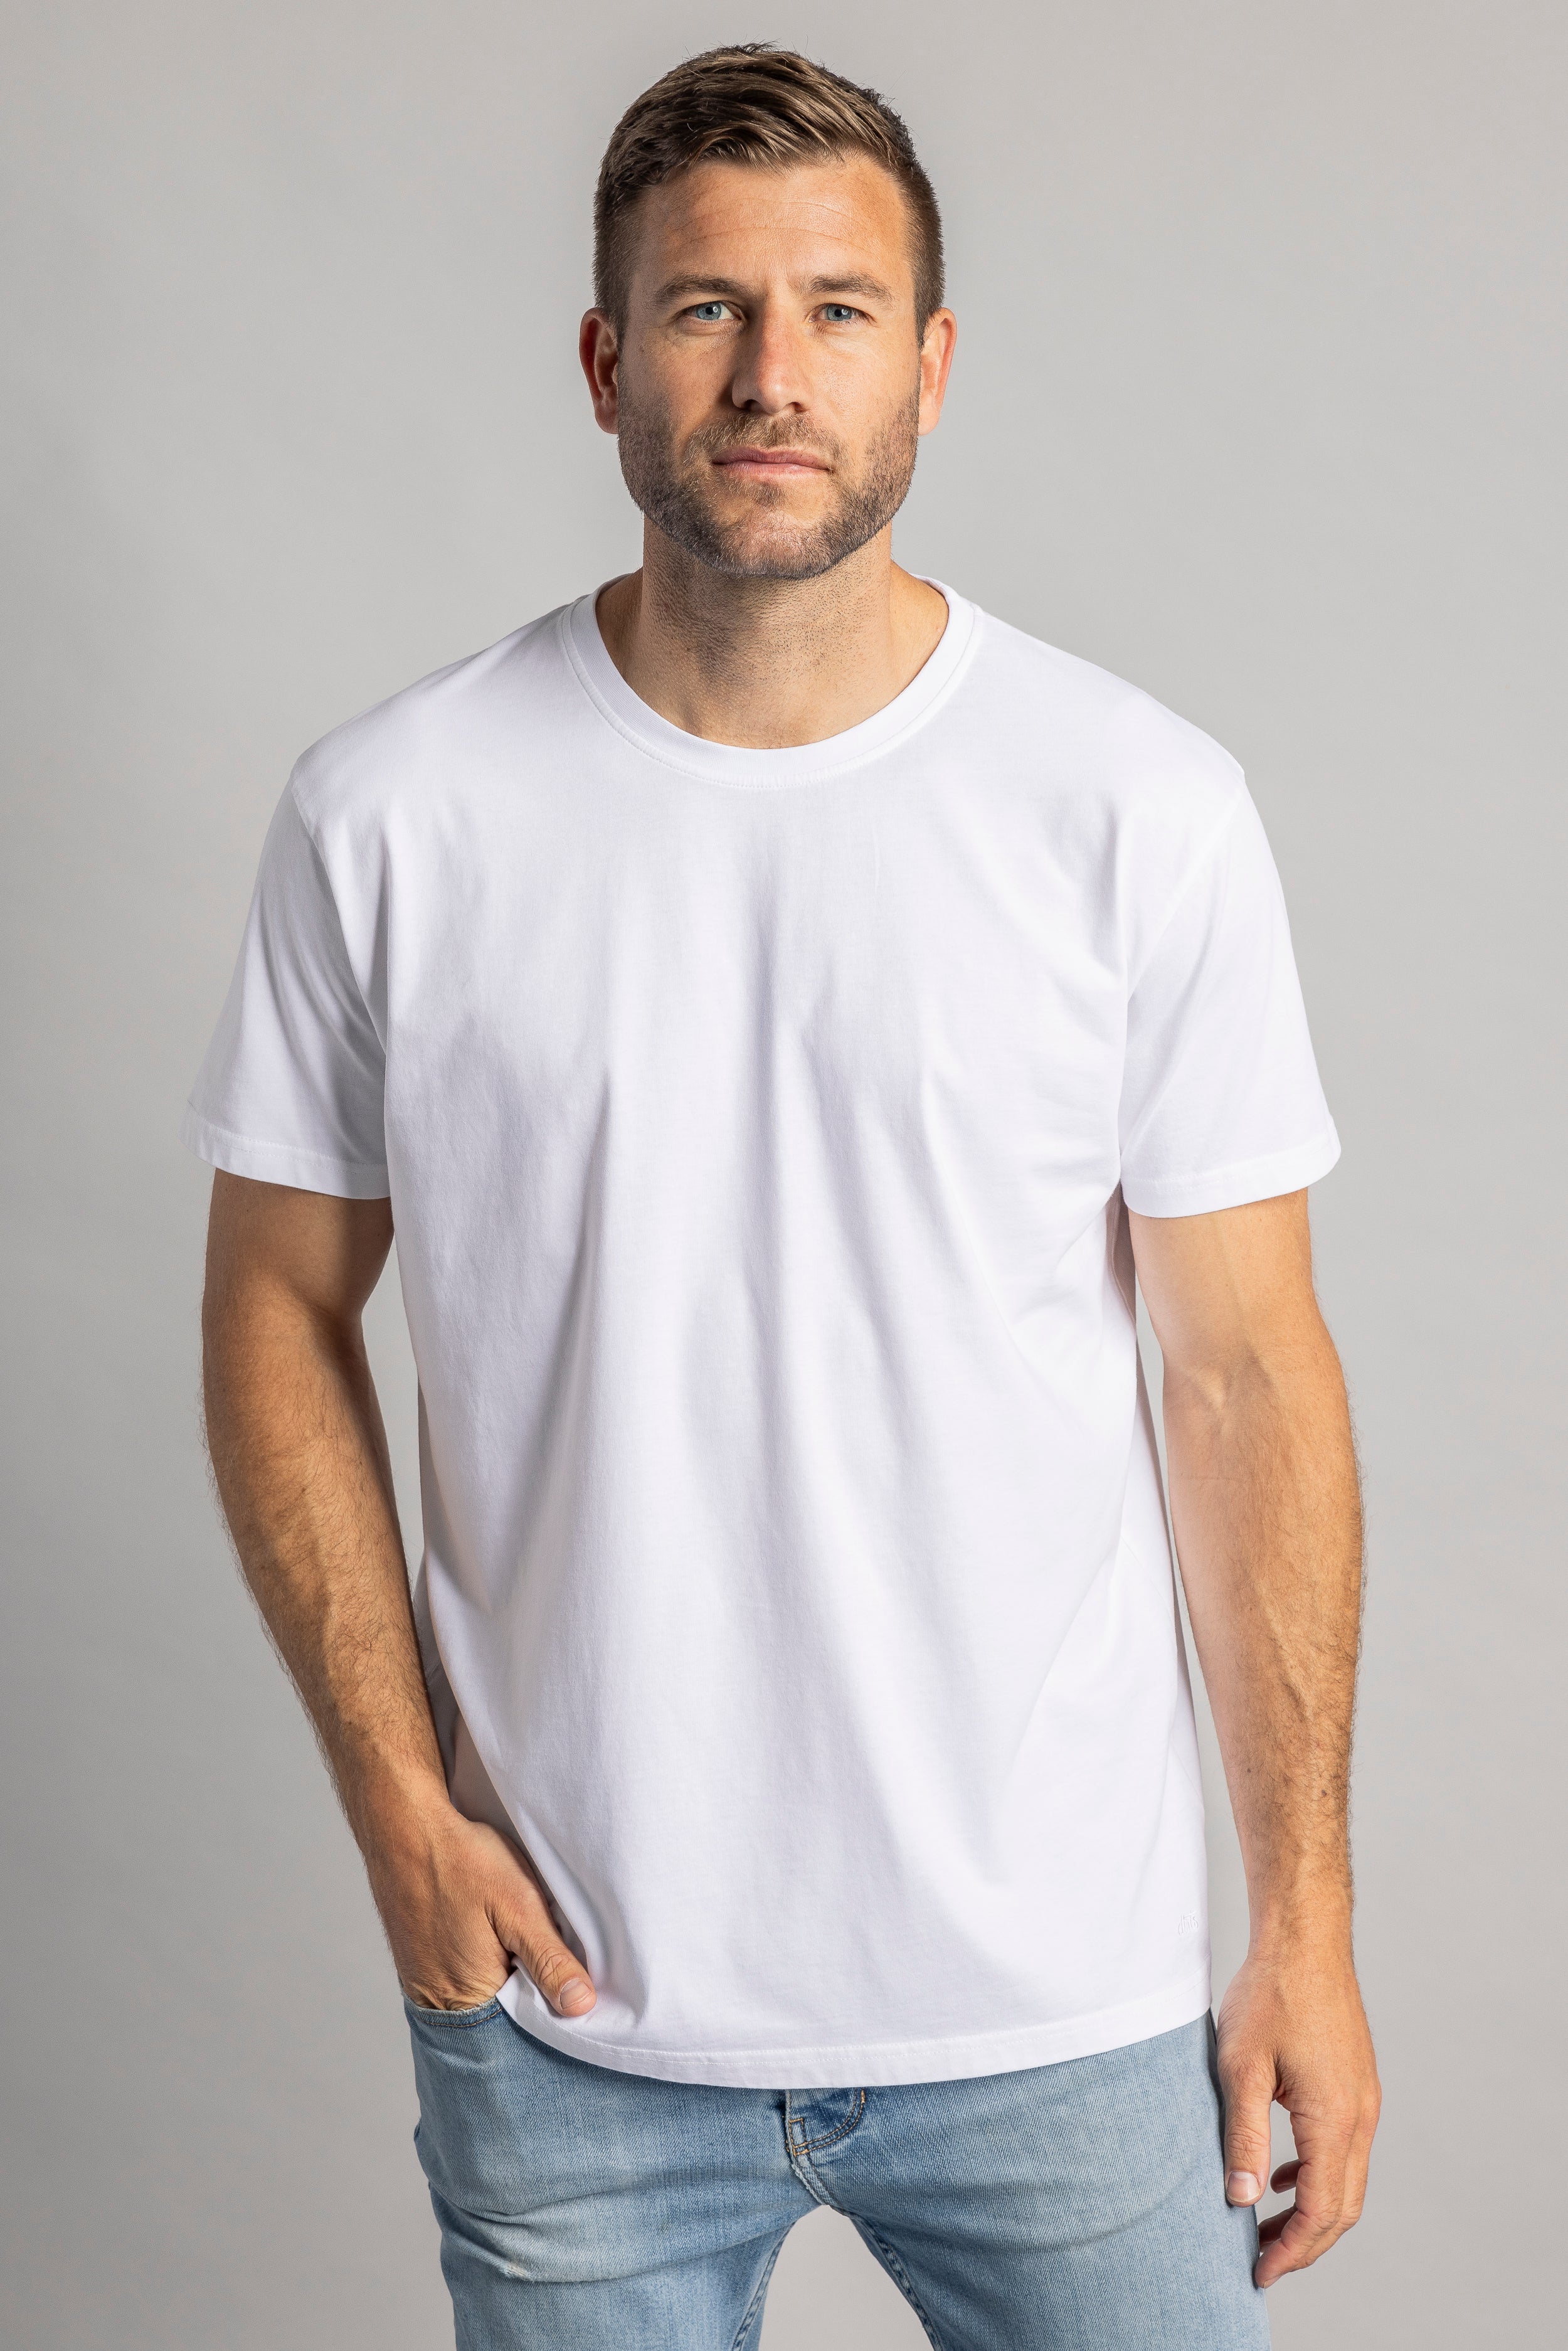 T-shirt blanc Premium Blank Standard en coton 100% biologique de DIRTS